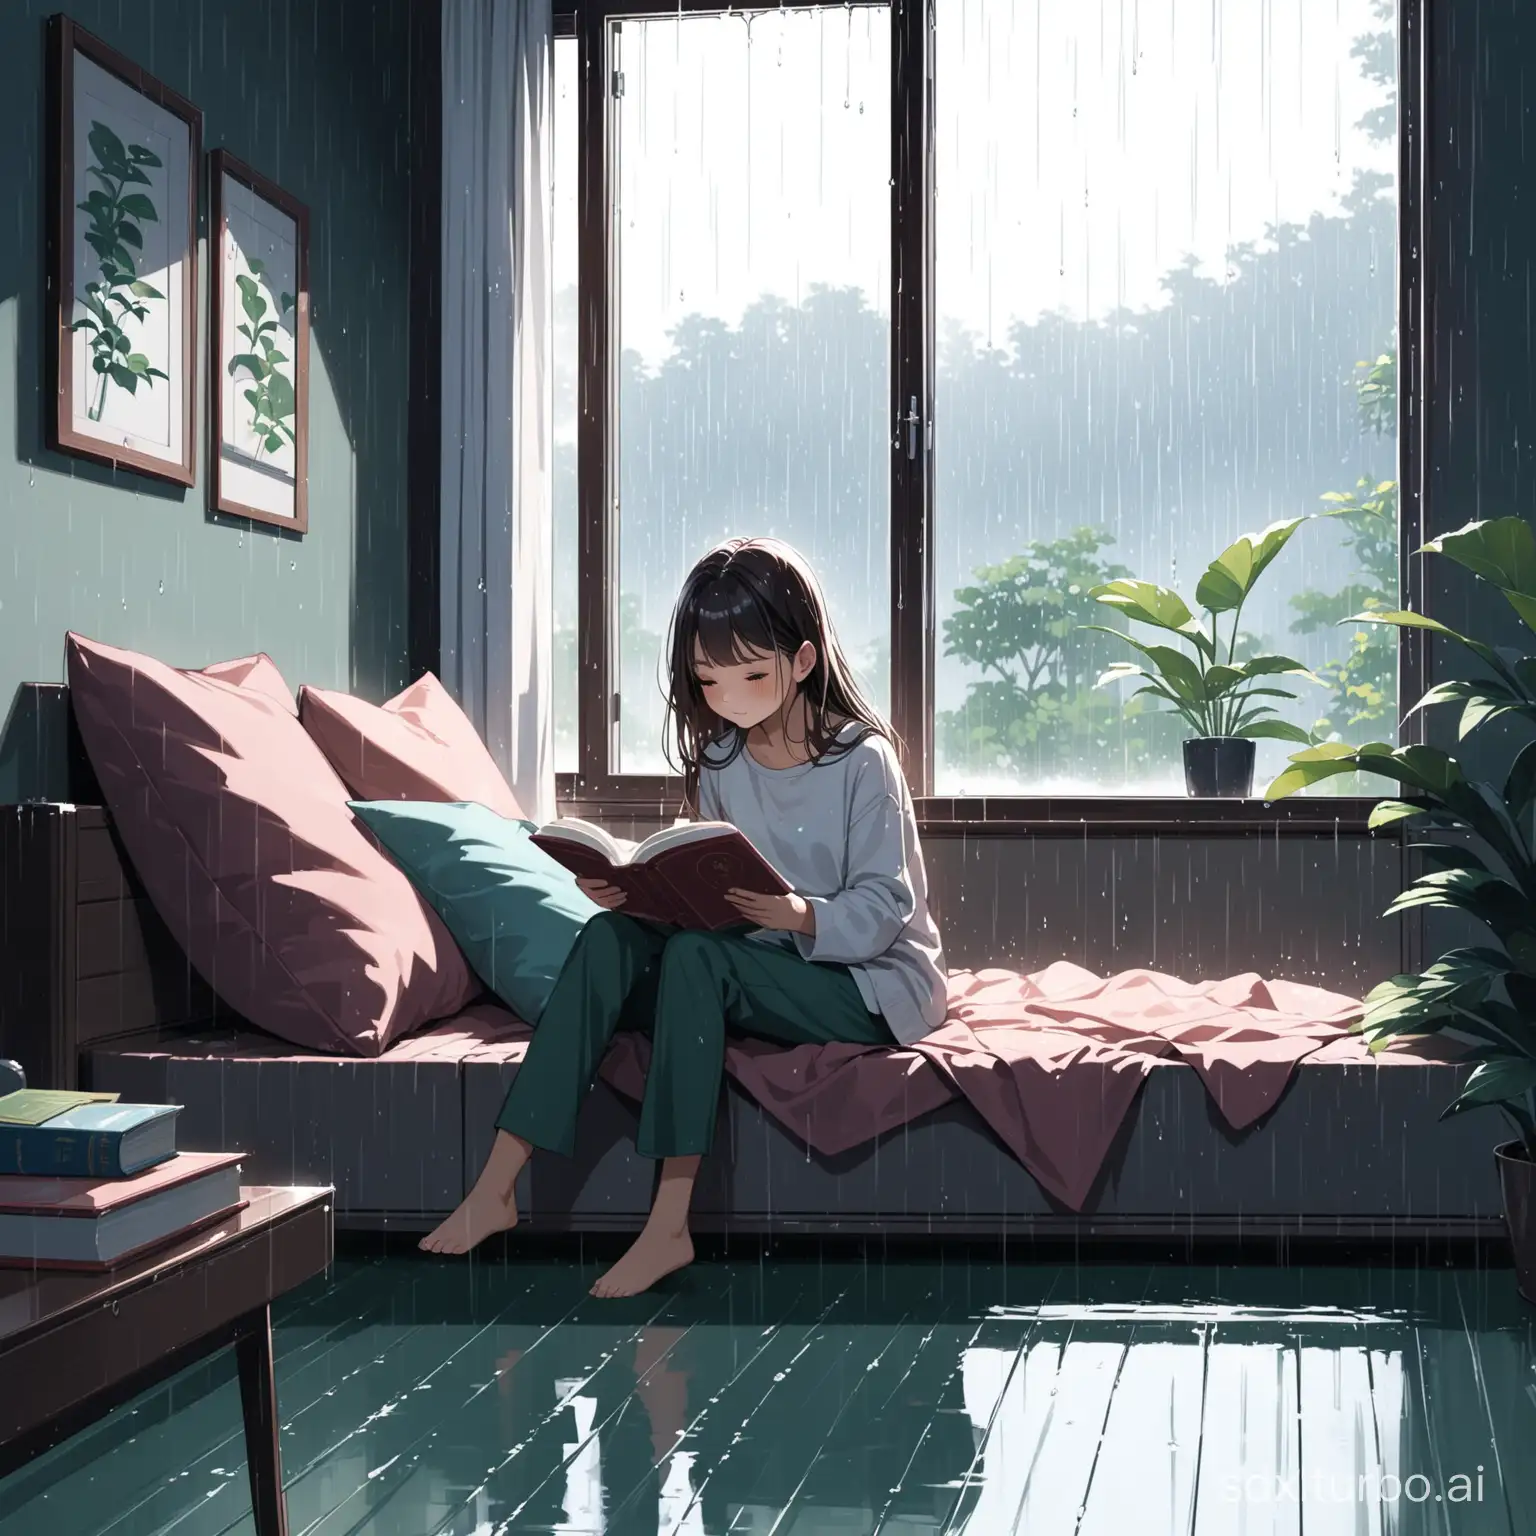 女孩 一个人在家看书 外面下雨